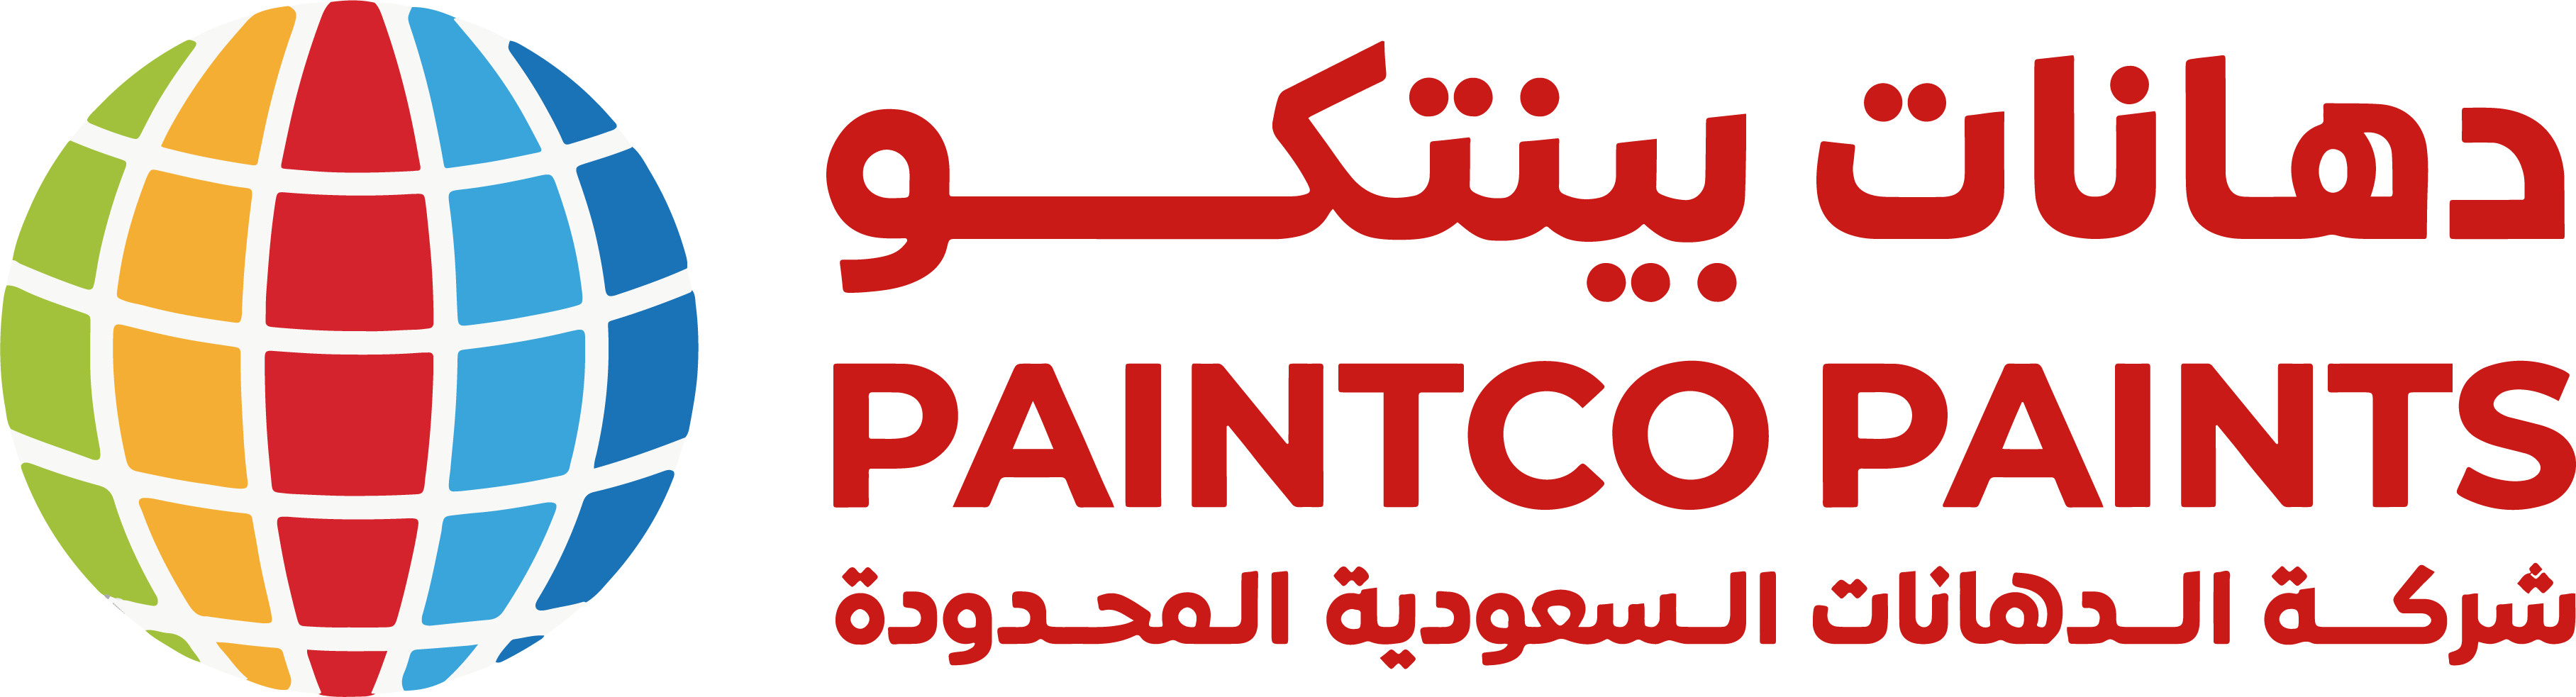 Paint Co